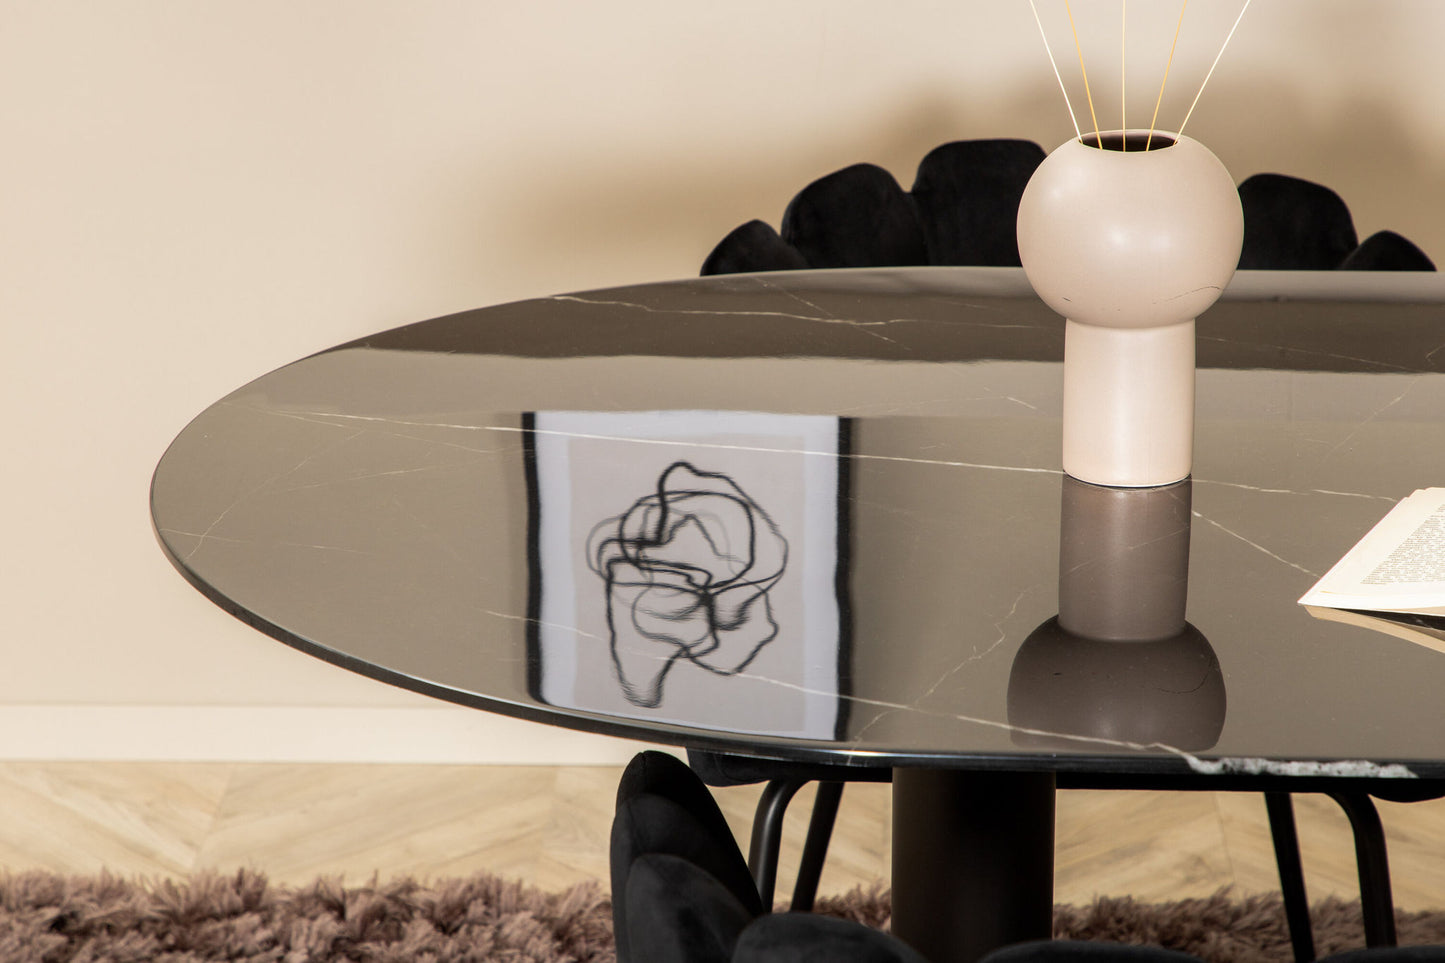 Pillan - Ovalt spisebord, Sort glas Marmor+Limhamn , Stol, Sort velour